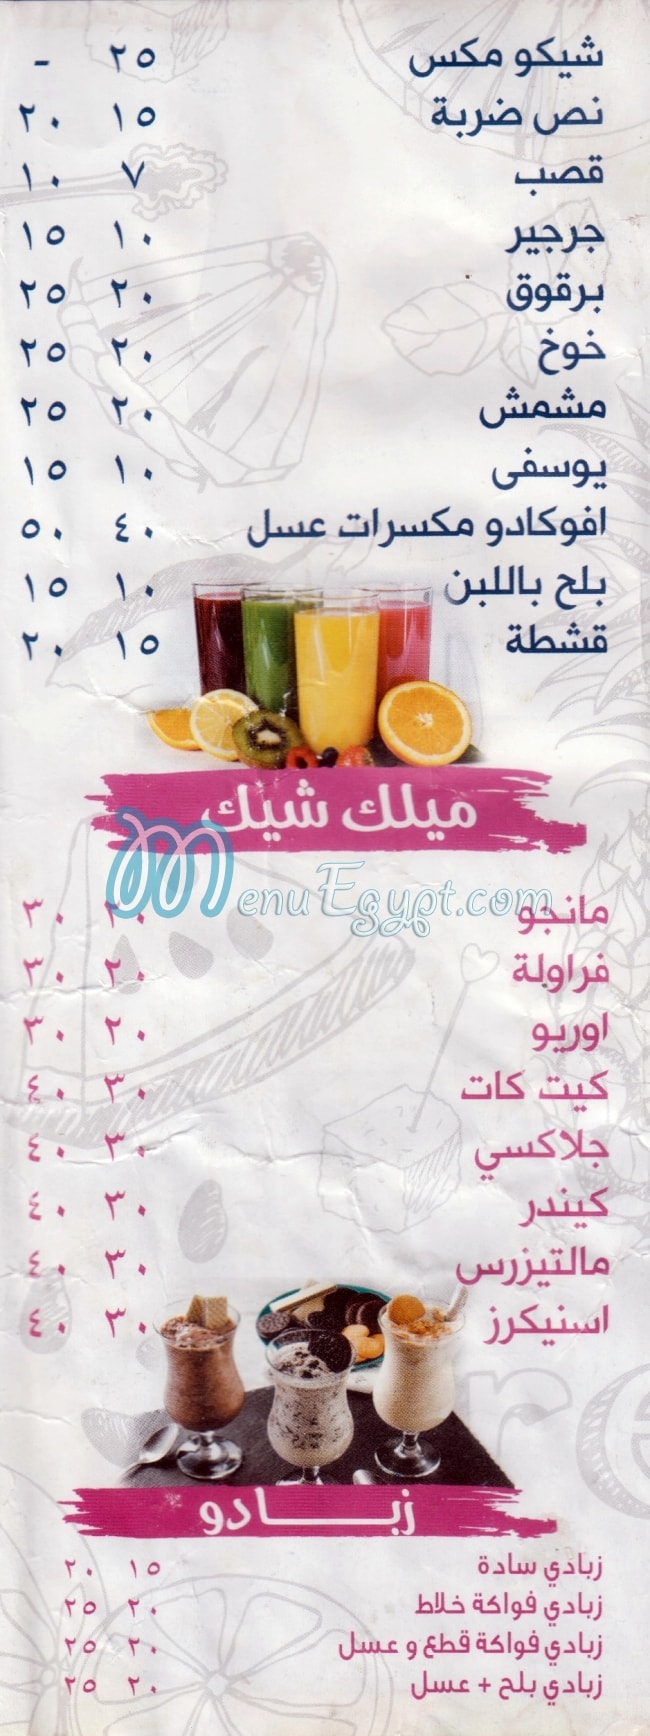 3ASAAR EL ARABY online menu